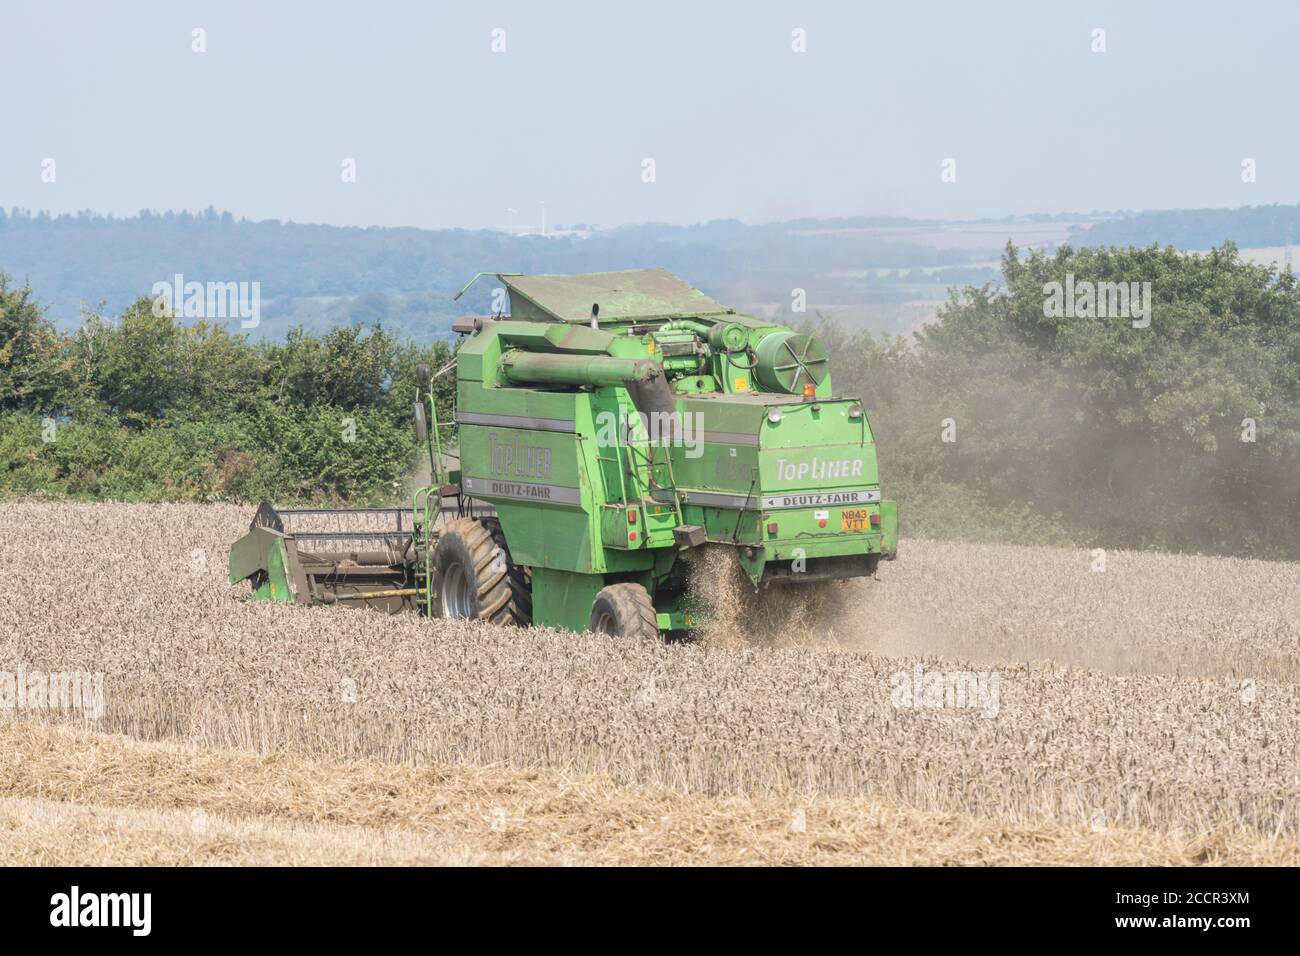 Moissonneuse-batteuse Deutz-Fahr 4065 coupe une récolte de blé 2020 au Royaume-Uni lors d'une journée chaude d'été et remplit d'air de poussière. Rabatteur à dents, tuyau latéral et secoueur visibles. Banque D'Images